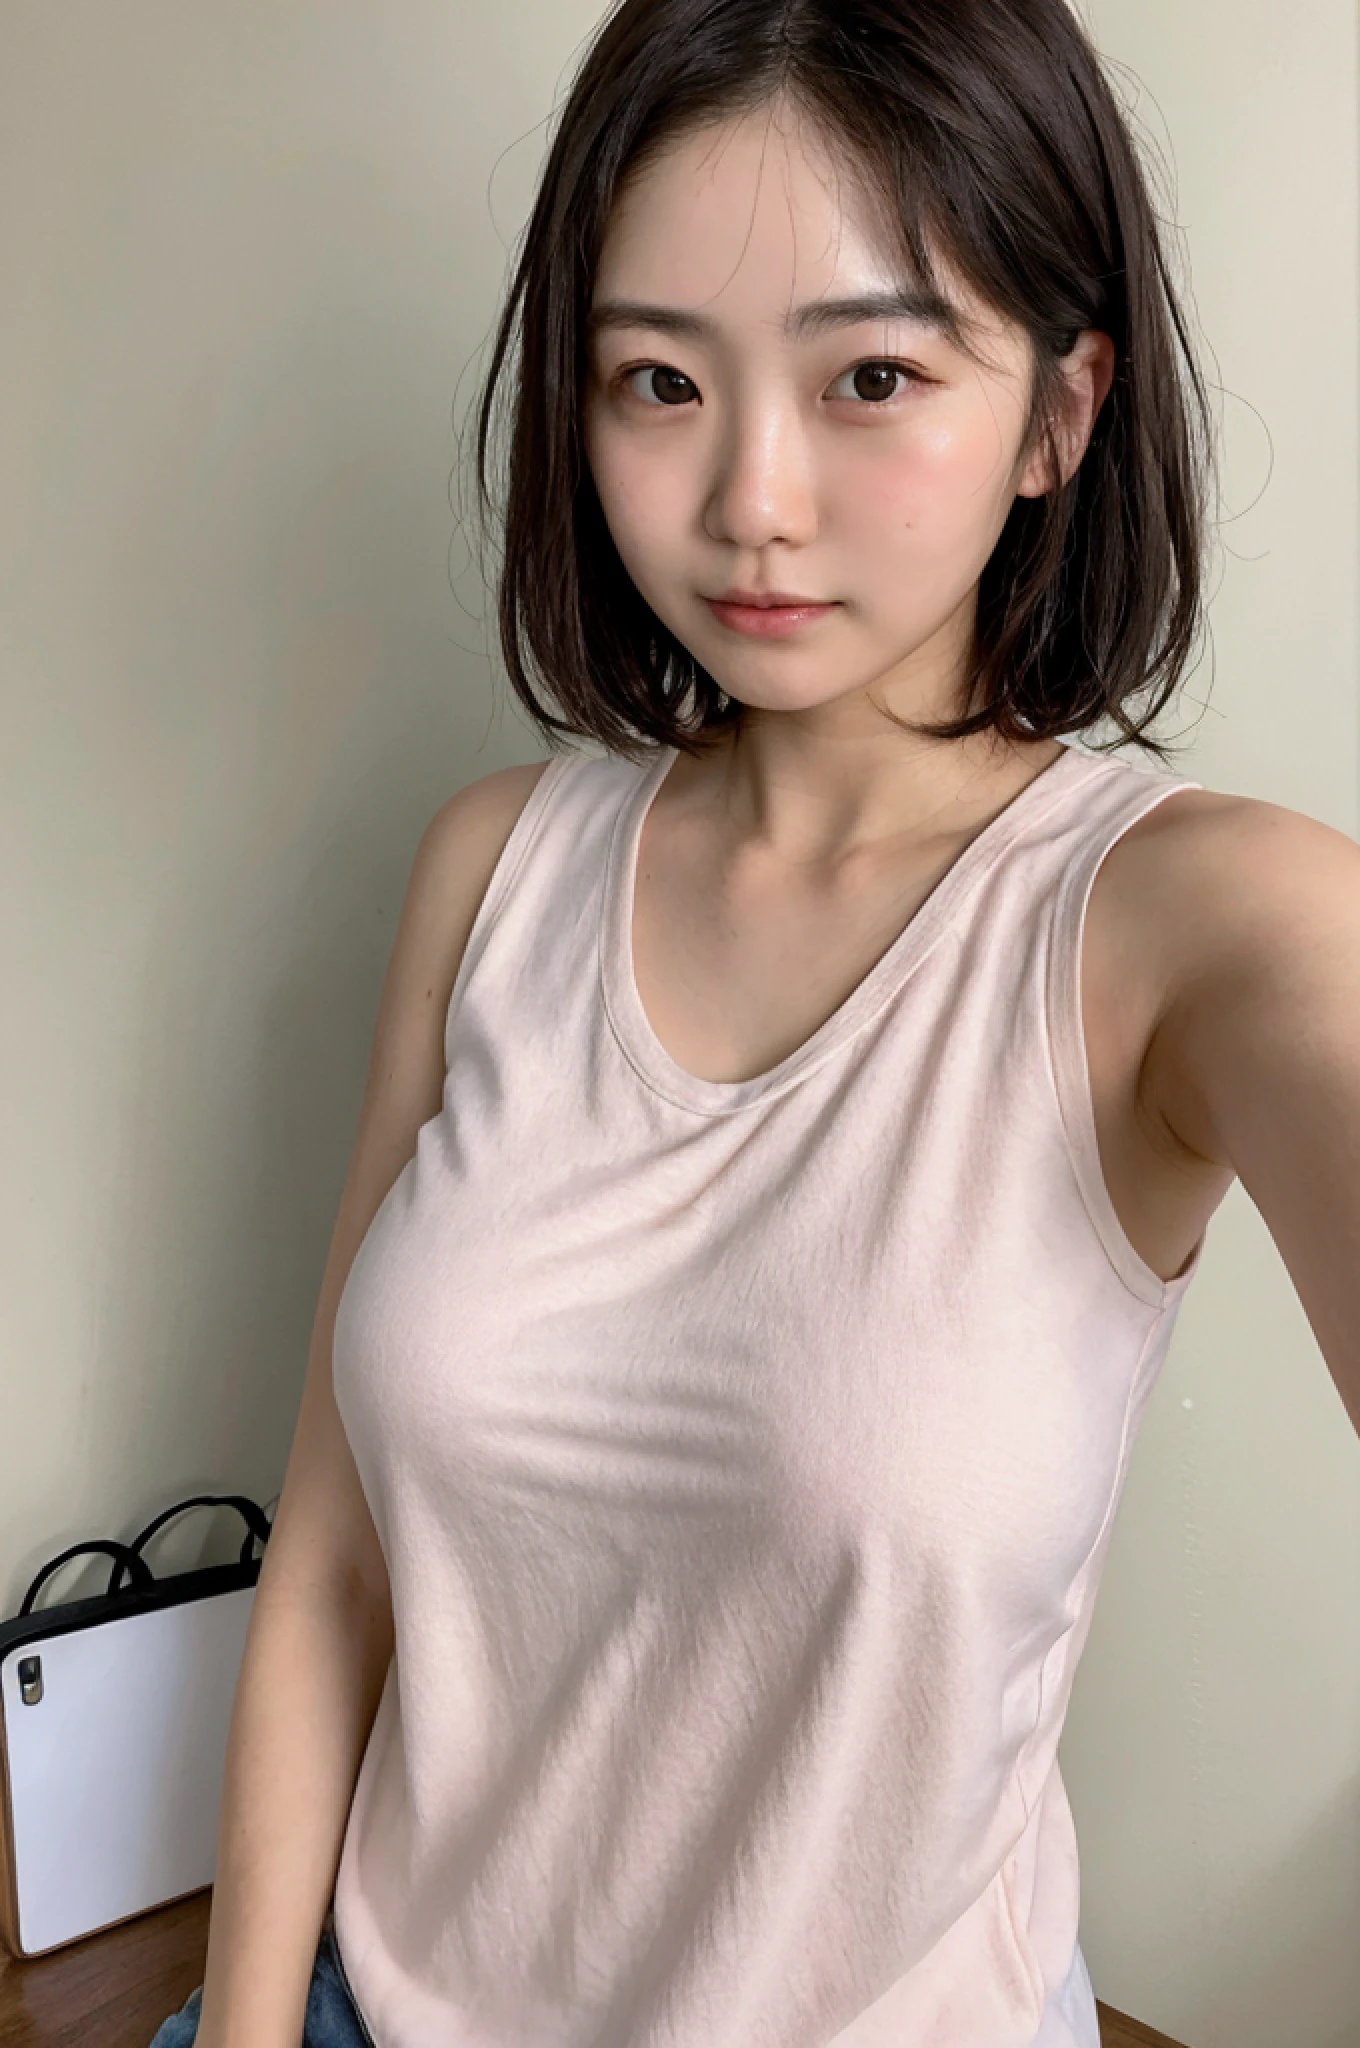 ((obra de arte)),(melhor qualidade,qualidade máxima,8K),Luz Amadora,imagem amadora,(ultra realistic poros),fechar-se,olhos e rosto detalhados,(Foto CRU:1.0),1 garota,linda garota japonesa vestindo camisa rosa sem mangas tirando selfie,(Cabelo bagunçado,cabelo curto:1.1),(suando),sem maquiagem,rosto natural,pequeno ,peito enorme,fotorrealismo,20 anos de idade,sala